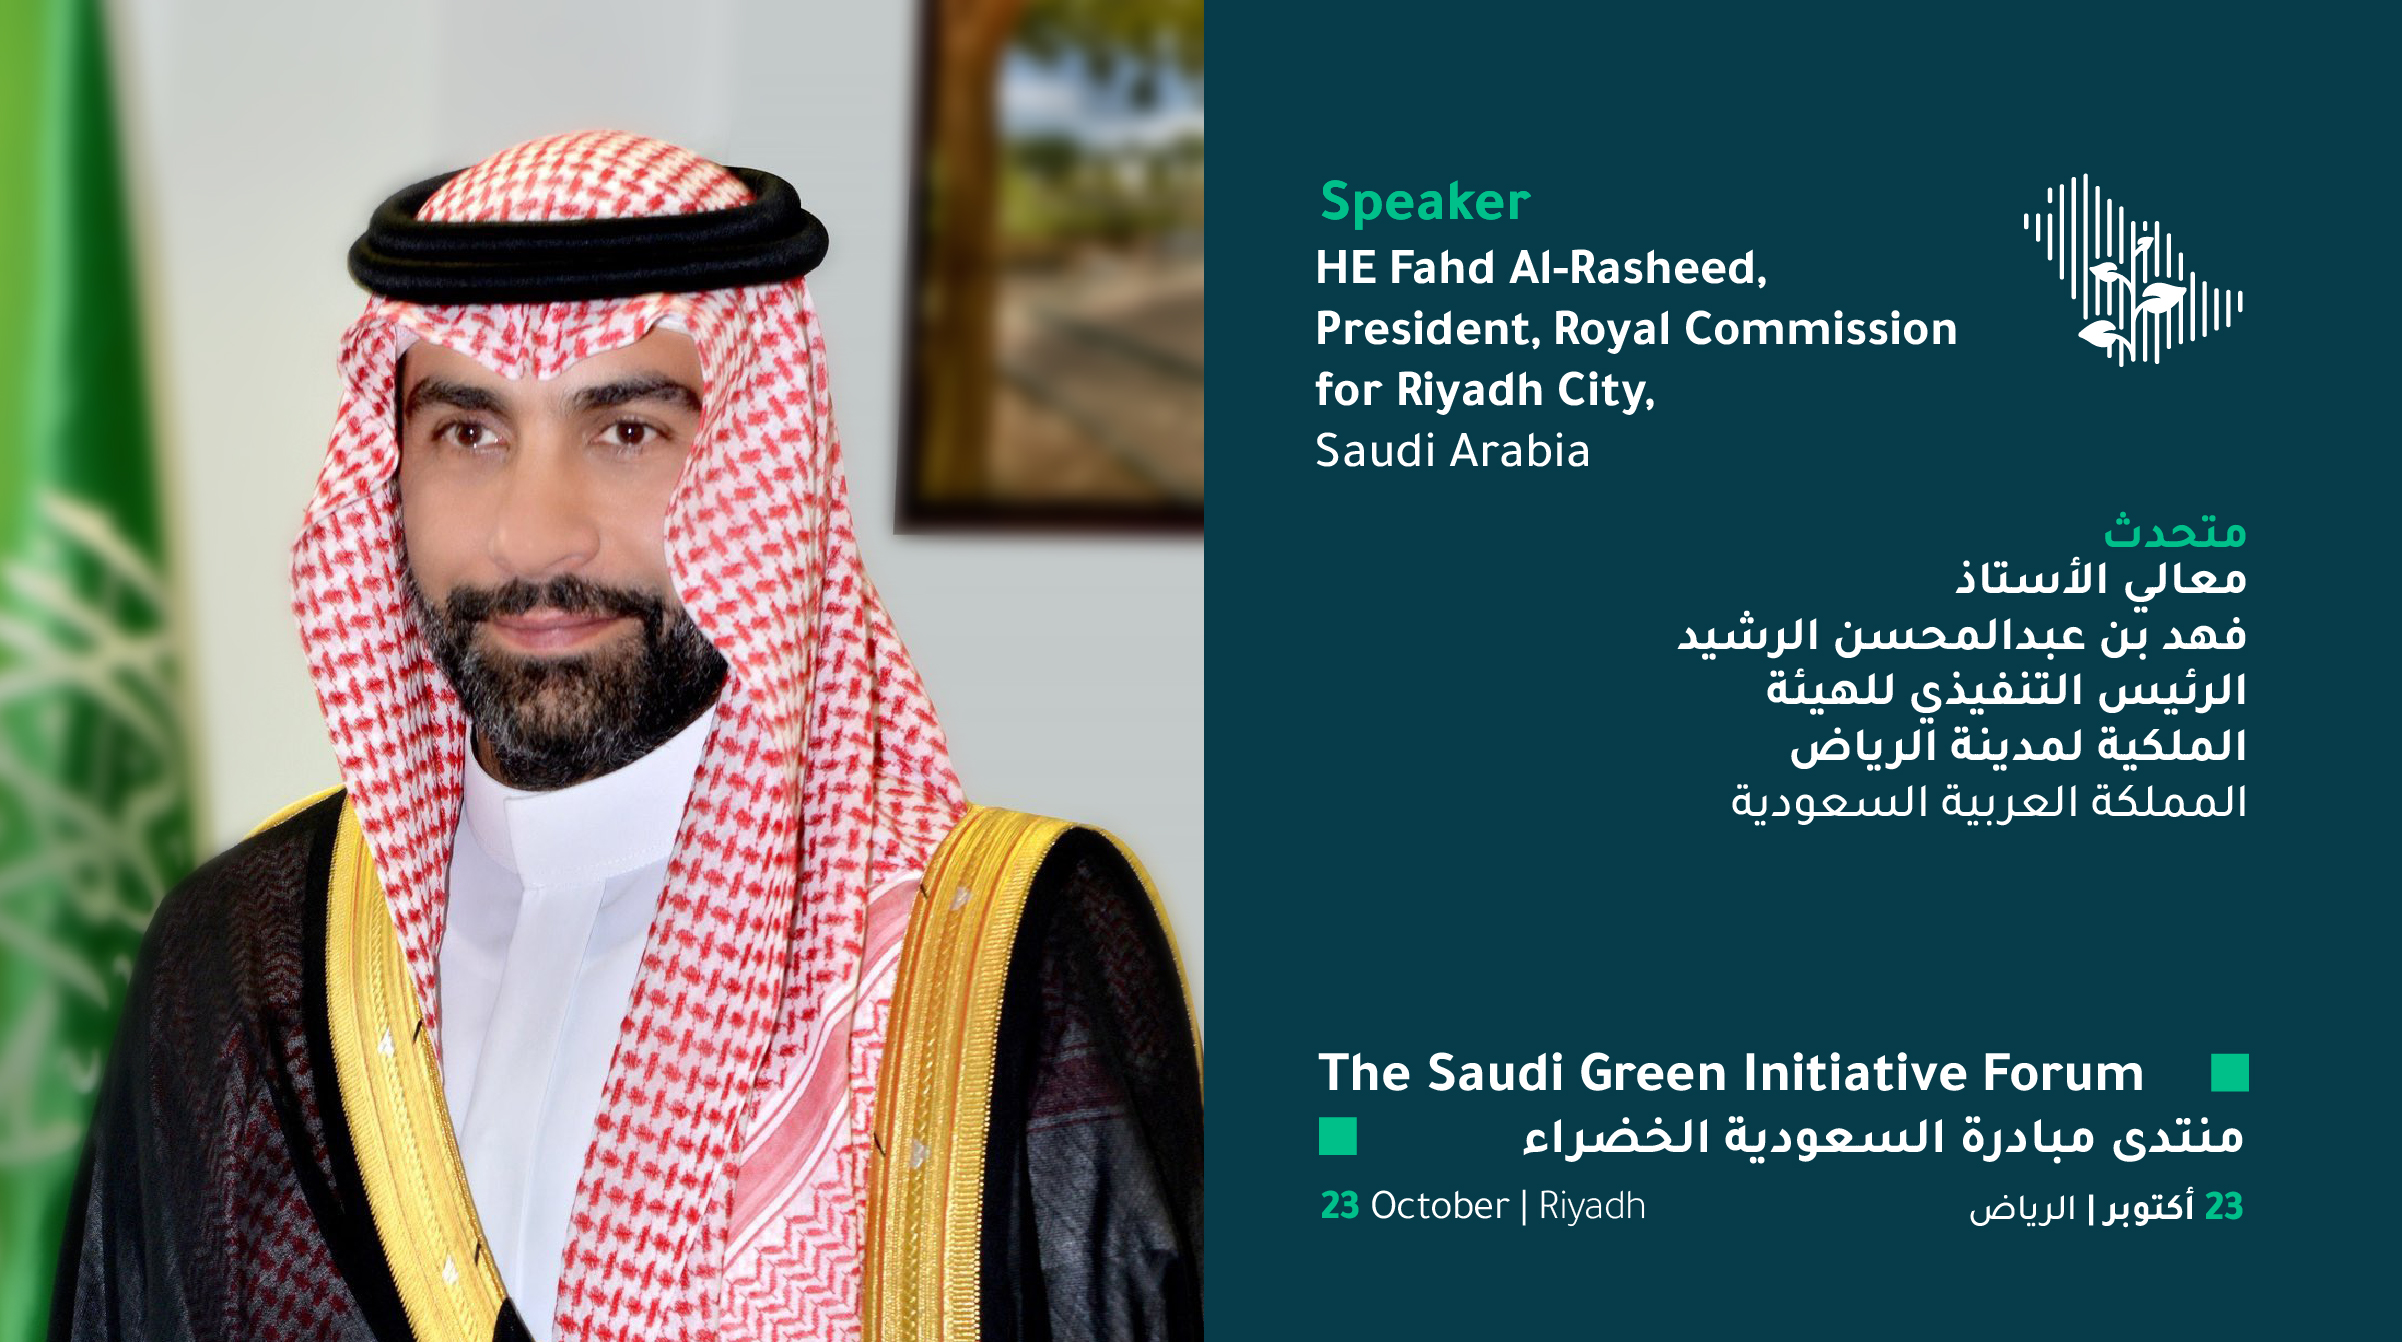 الرشيد يتحدث عن مبادرات الرياض في منتدى السعودية الخضراء